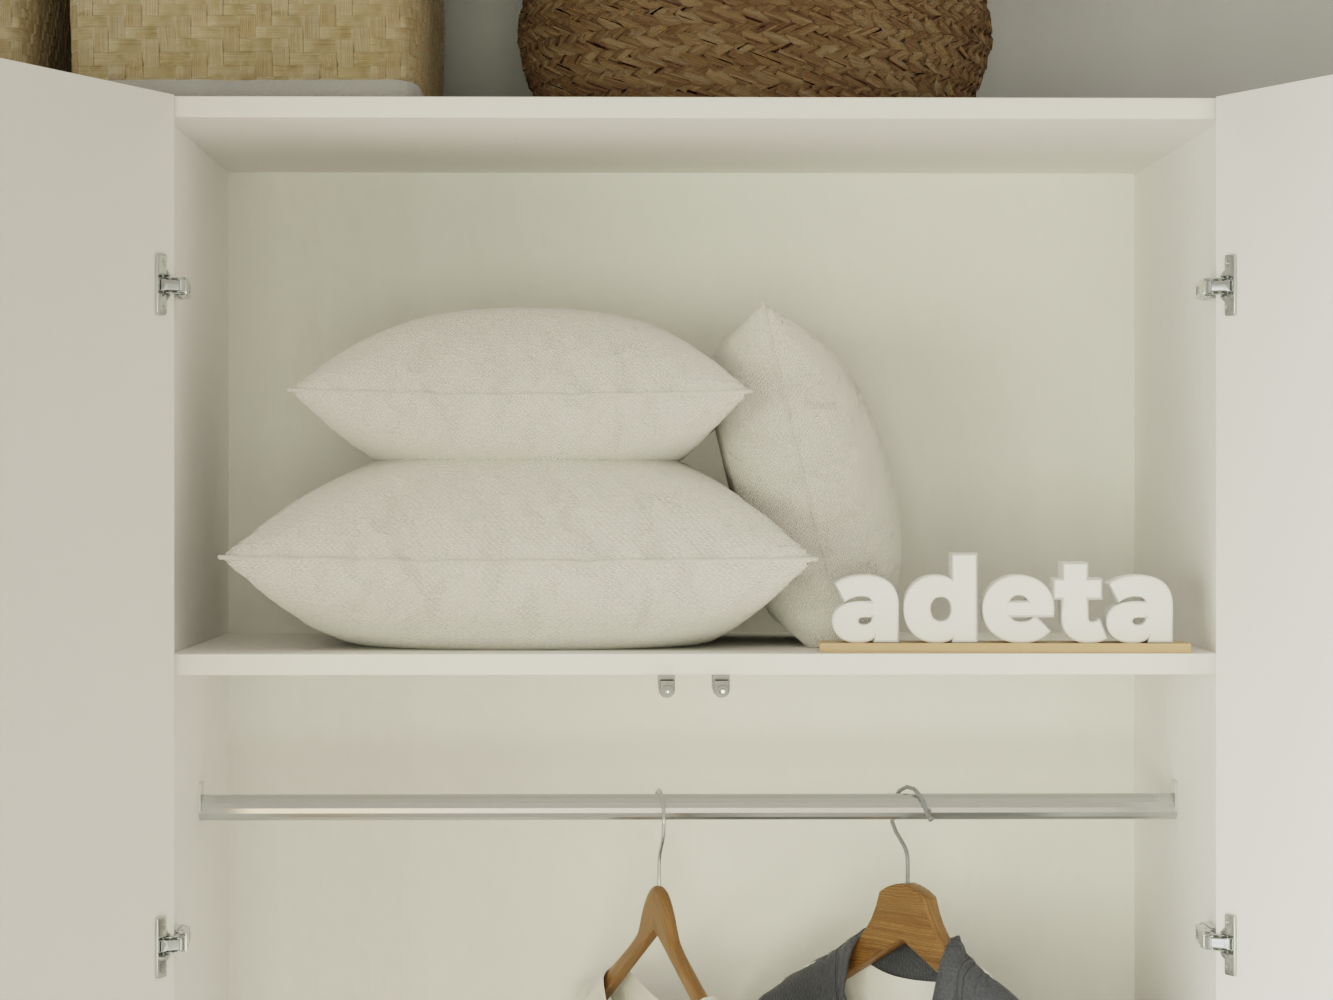  Распашной шкаф Пакс Форсанд 18 white ИКЕА (IKEA) изображение товара